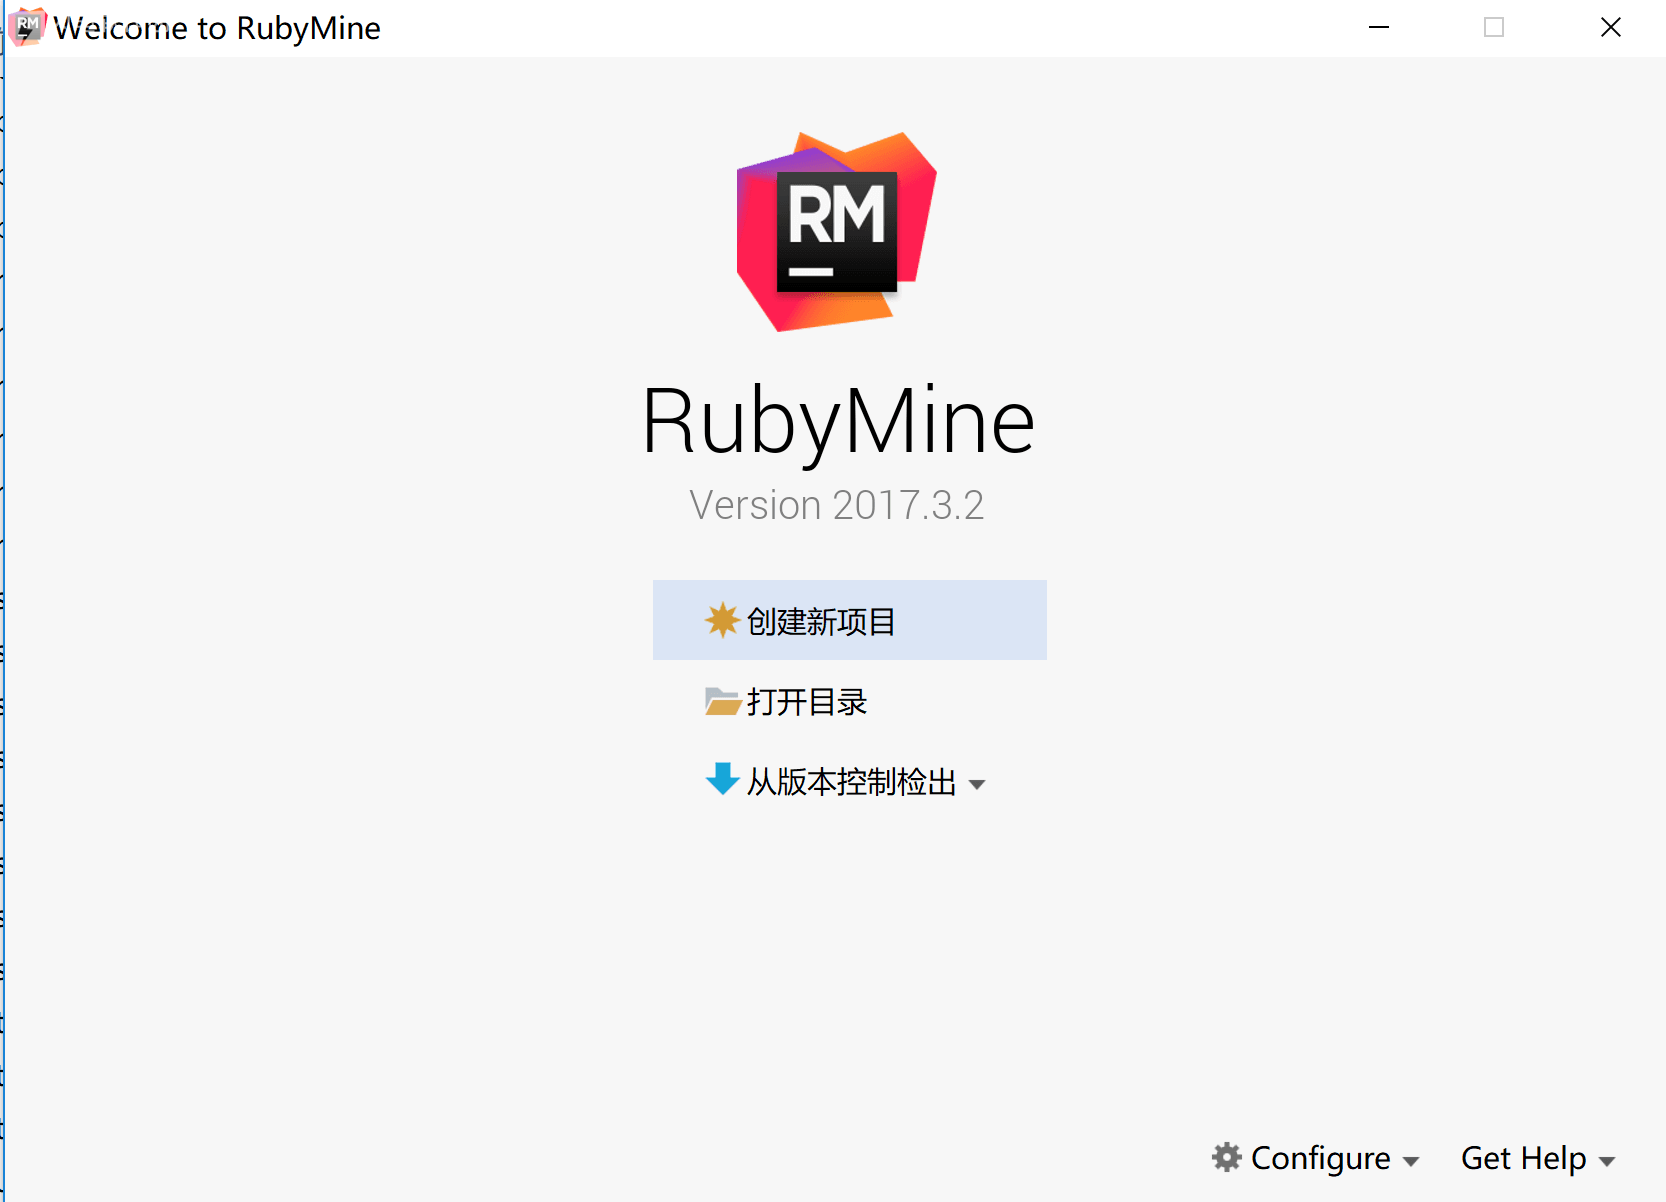 RubyMine 2017